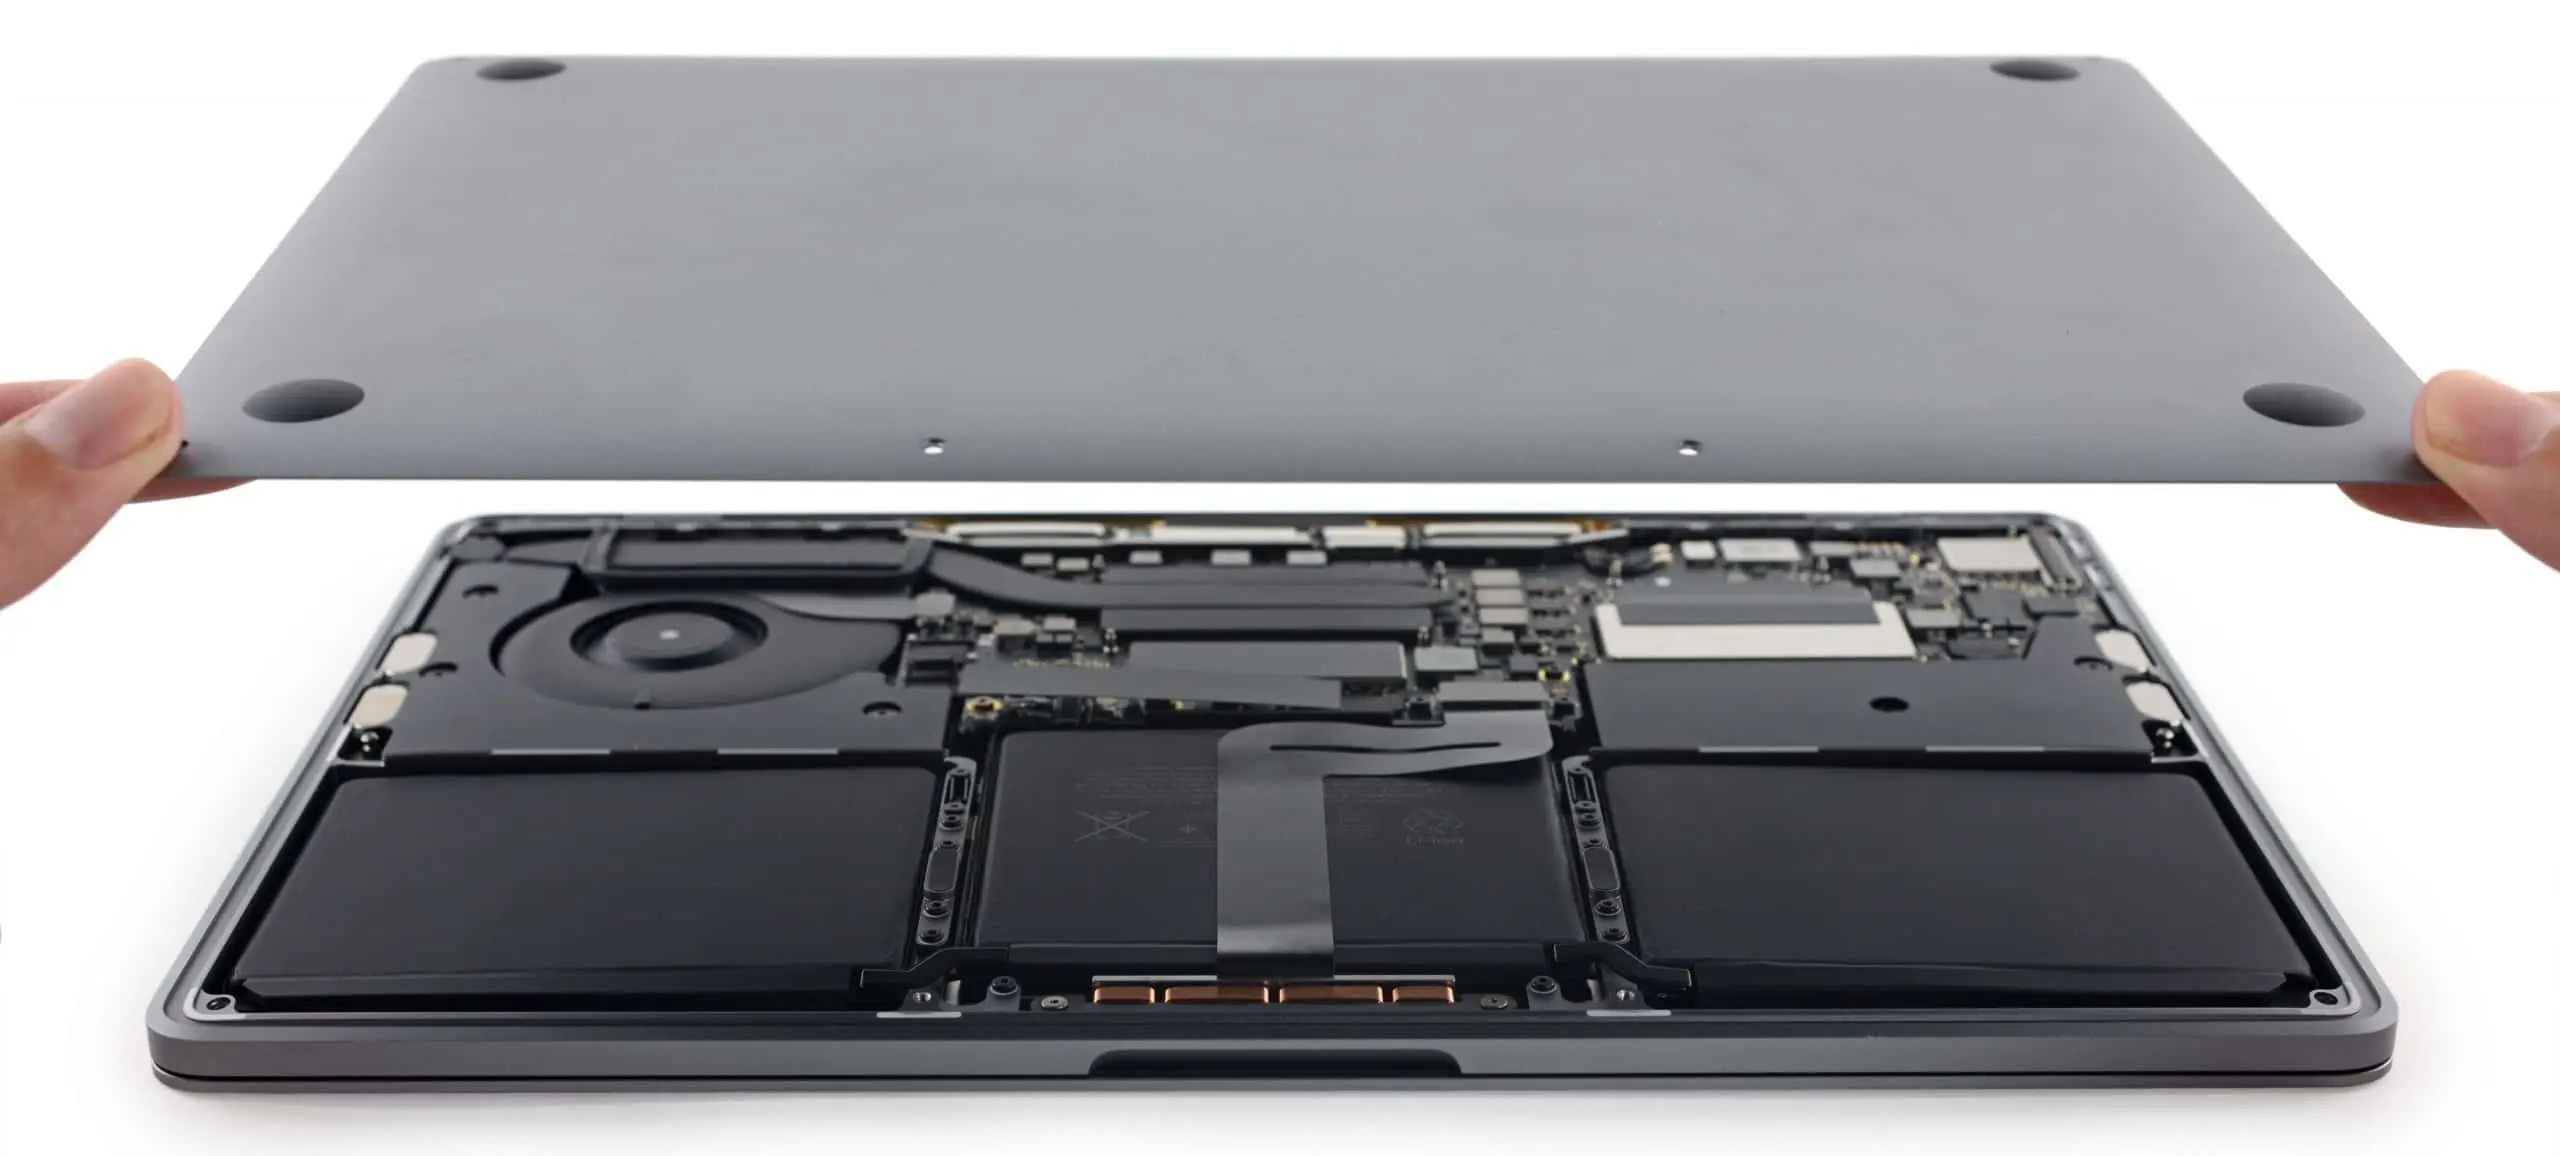 cambio de baterias en mac book pro - Cuánto tiempo dura la batería de una MacBook Pro